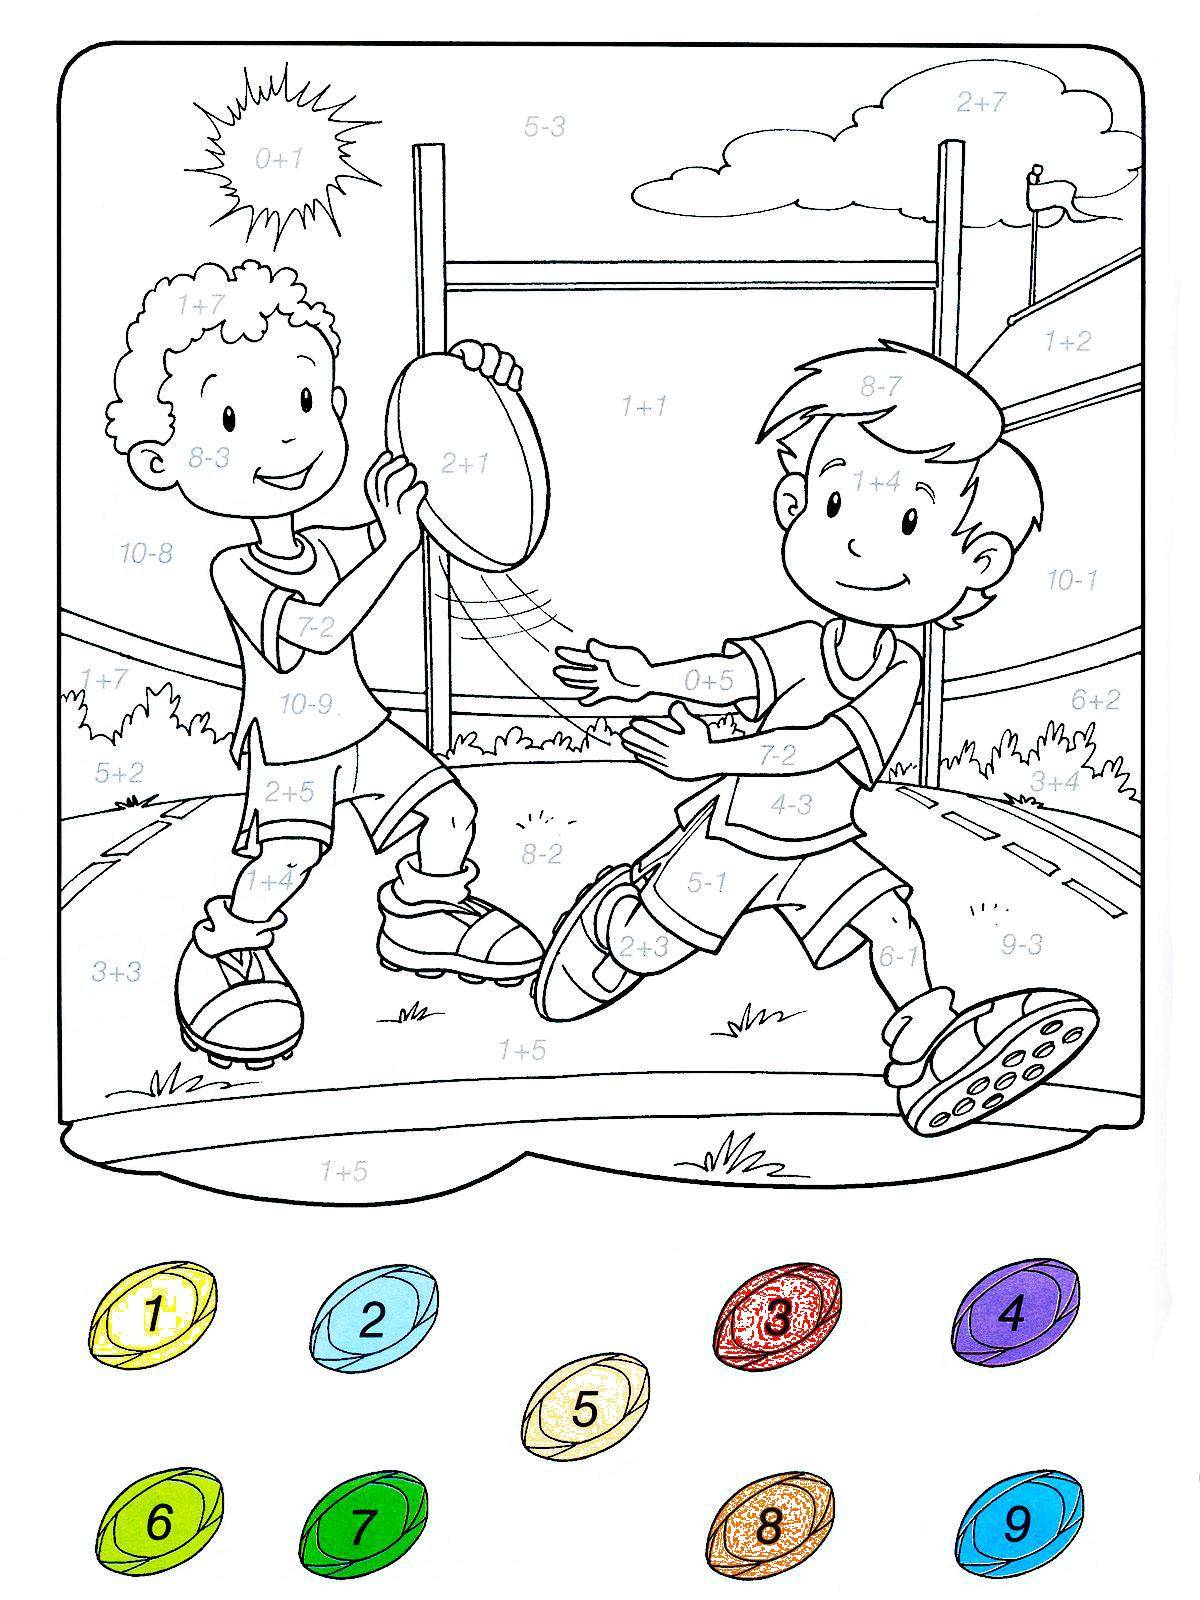 Раскрашивание задачи. Раскраски. Спортивные раскраски для детей. Игры для детей: раскраски. Раскраска спорт для детей.